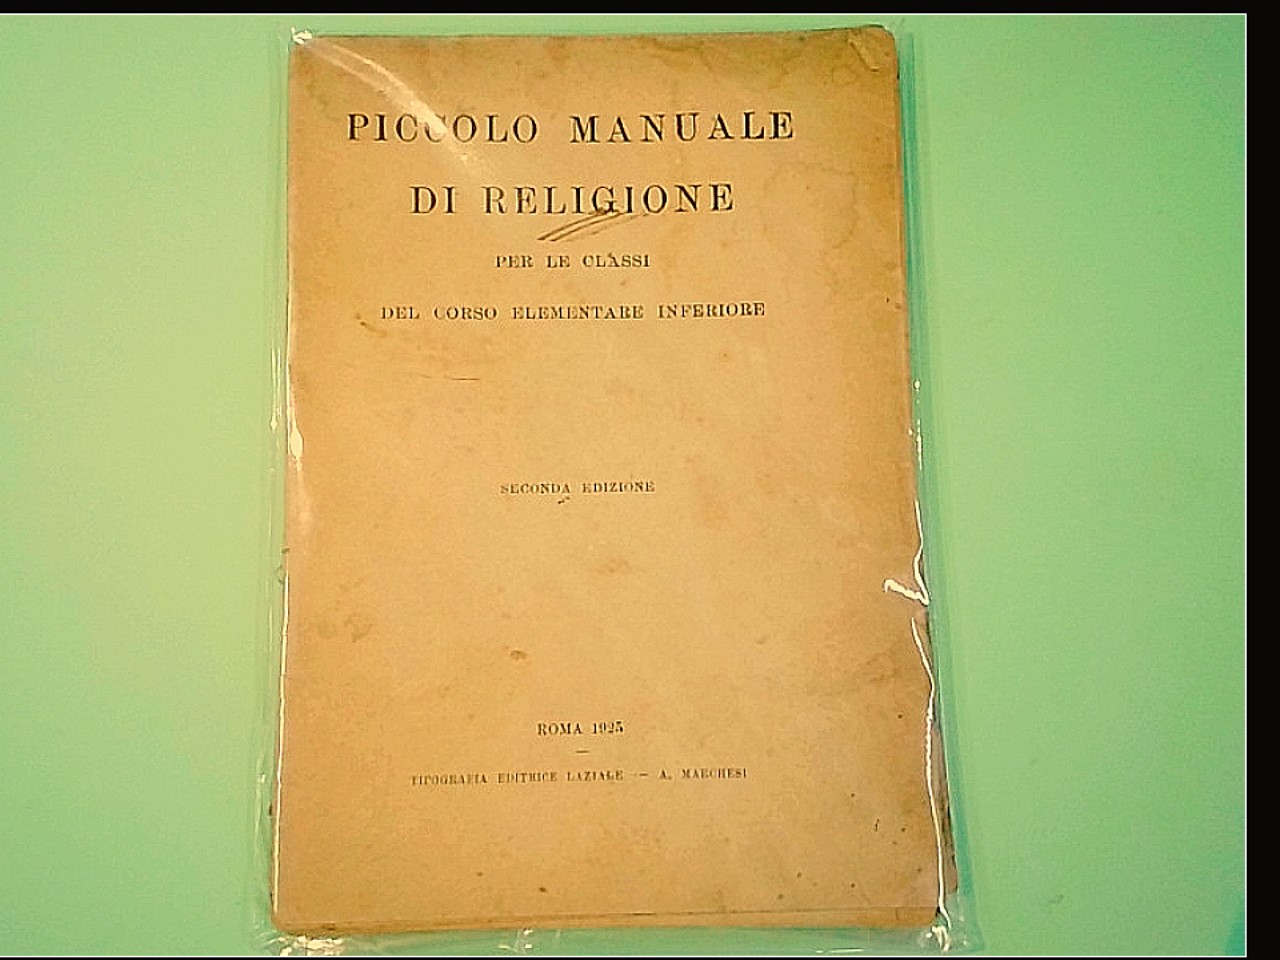 PICCOLO MANUALE DI RELIGIONE TIPOGRAFIA MARCHESI 1925